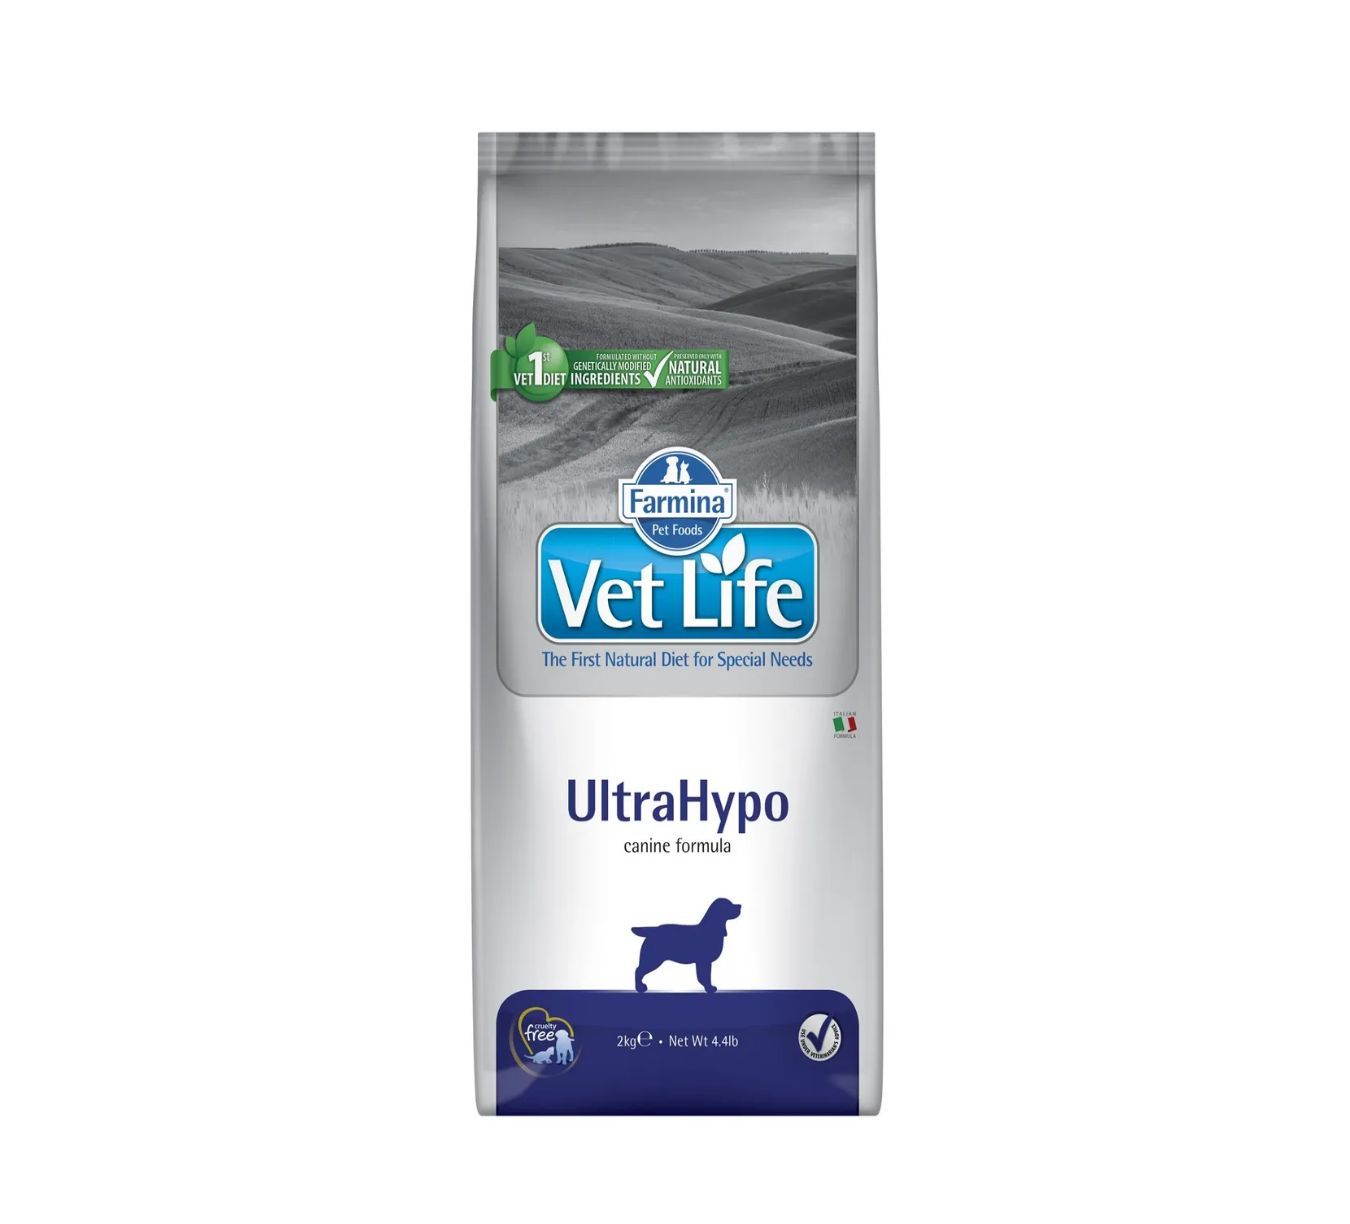 Vet life ultrahypo для собак. Корм для собак vet Life ULTRAHYPO. Farmina ULTRAHYPO для собак. Вит лайф для собак гипоаллергенный ультрагипо. Корм для собак VETLIFE ULTRAHYPO 2 кг как выглядит внутри.